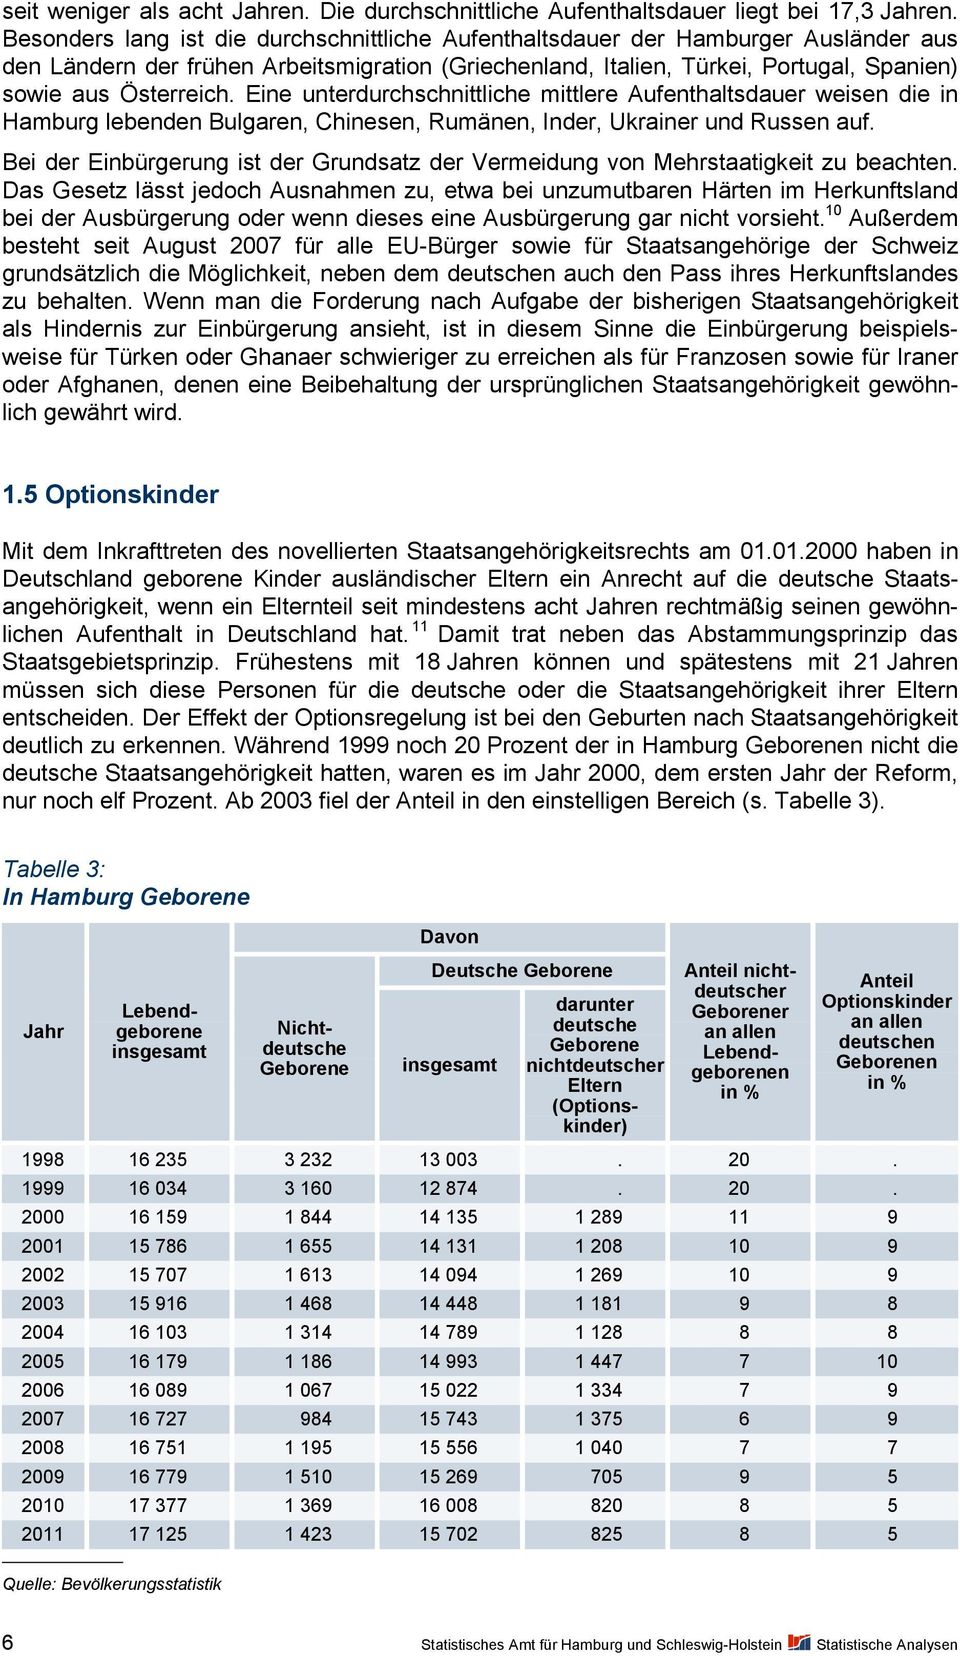 Eine unterdurchschnittliche mittlere Aufenthaltsdauer weisen die in Hamburg lebenden Bulgaren, Chinesen, Rumänen, Inder, Ukrainer und Russen auf.